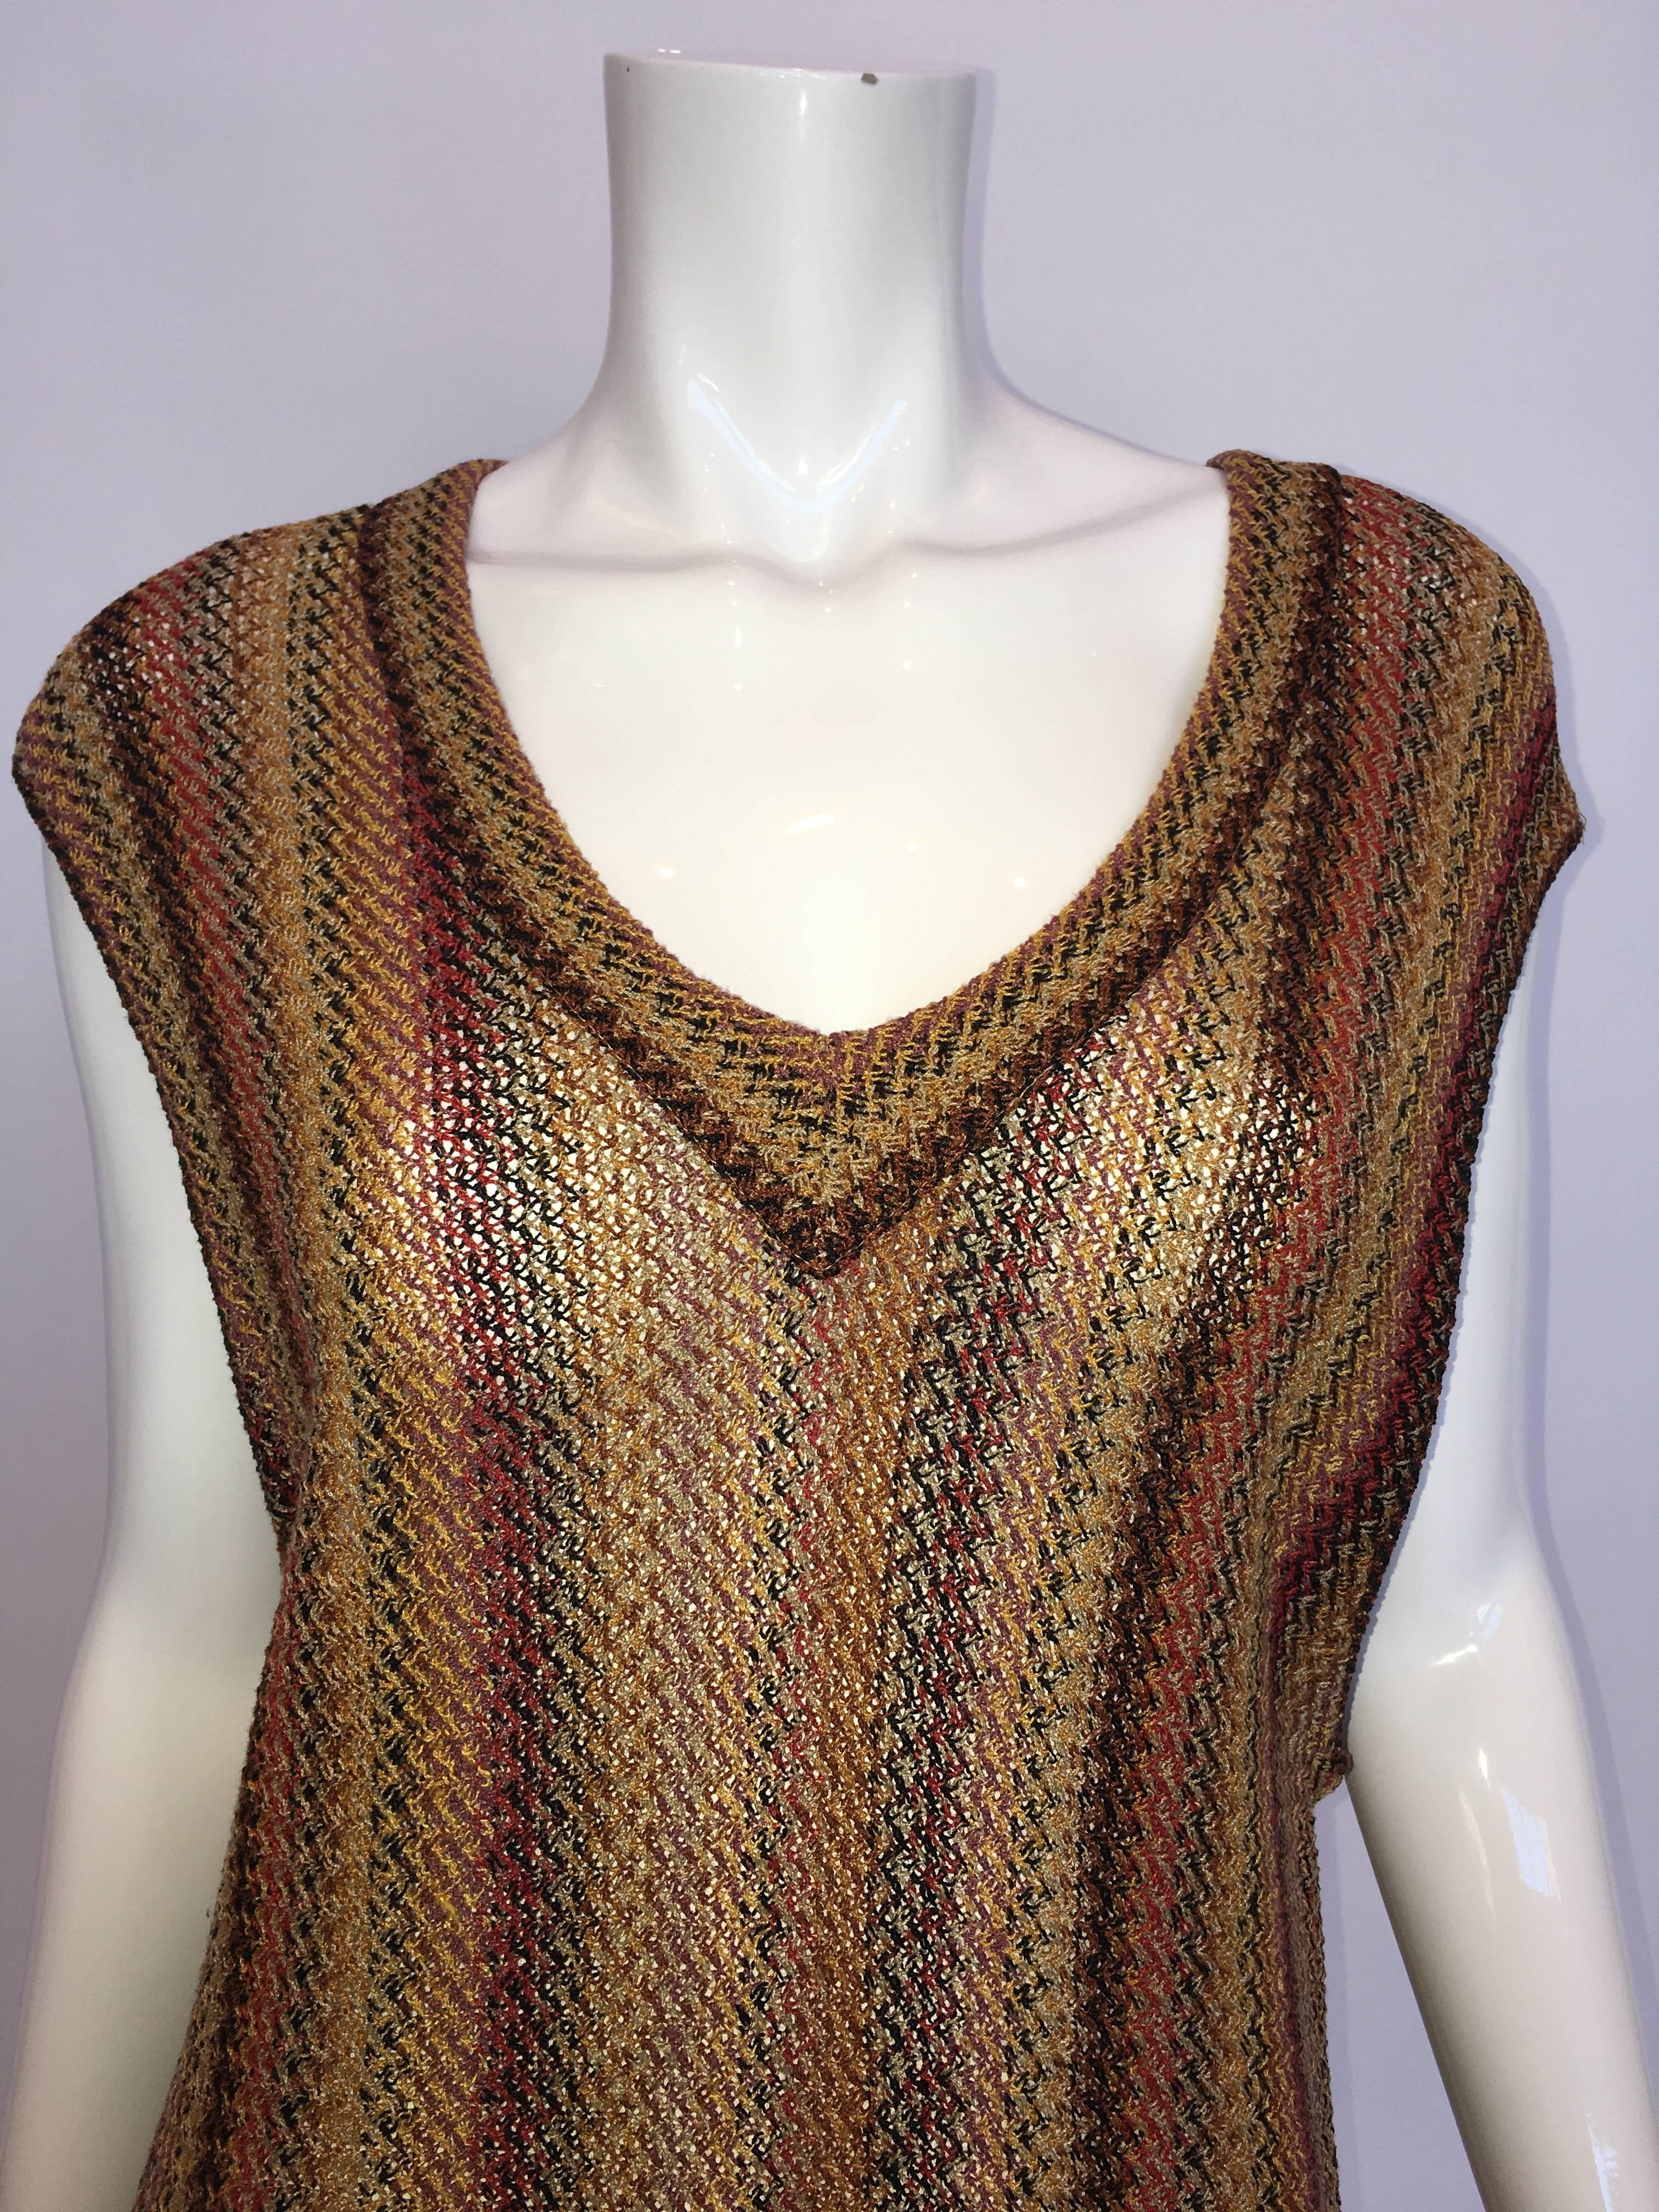 dress with knit vest